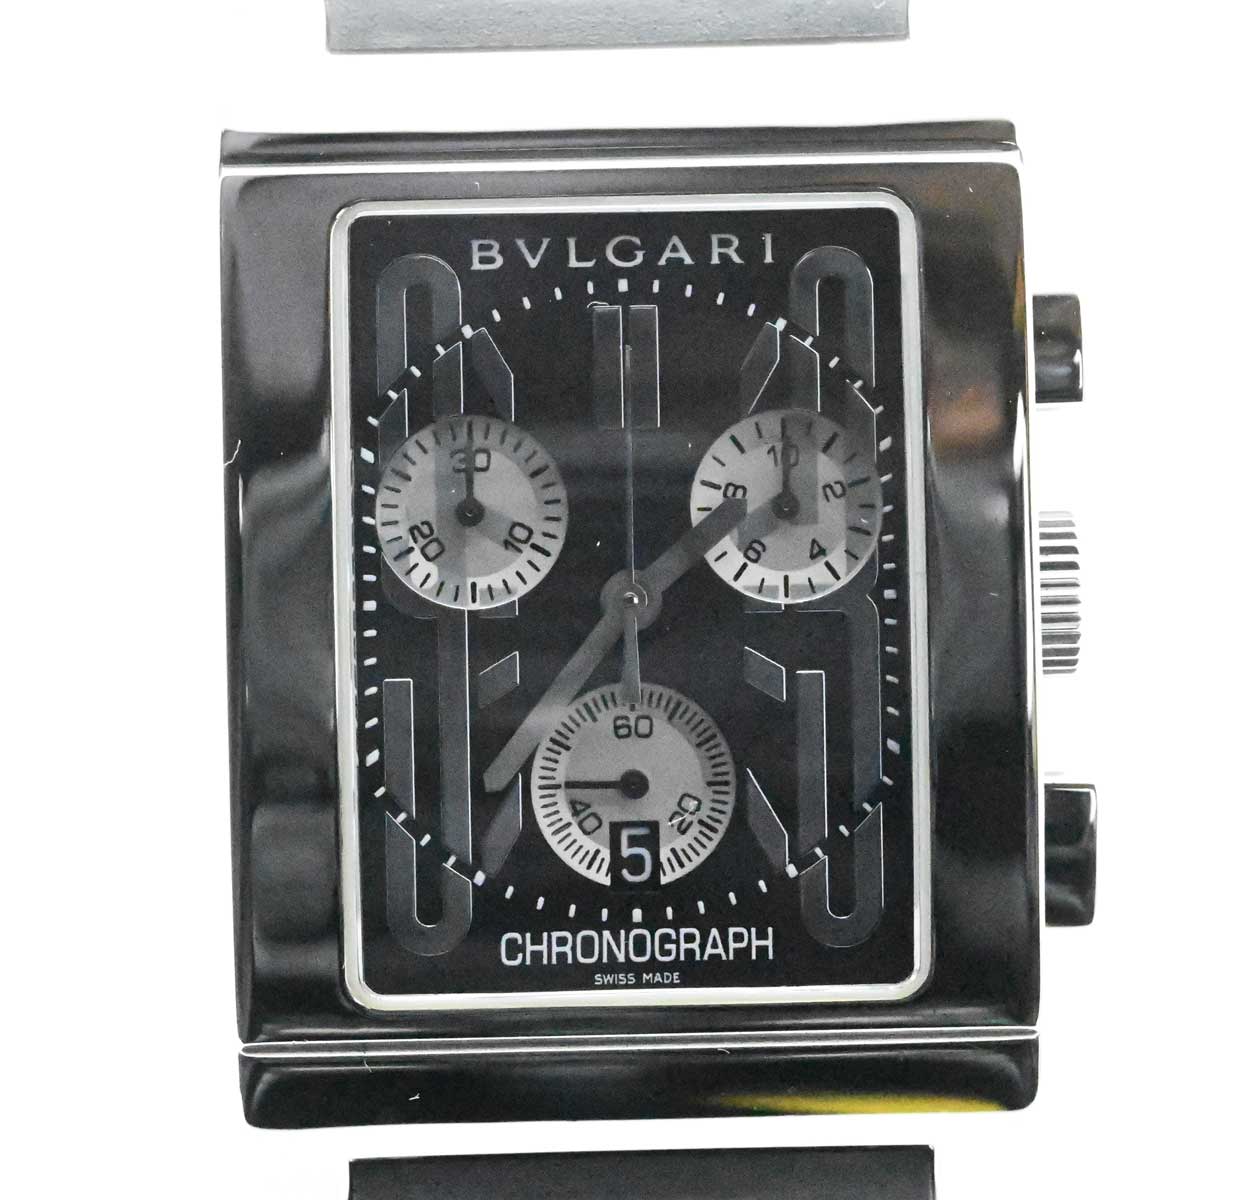 ブルガリ レッタンゴロの価格一覧 - 腕時計投資.com